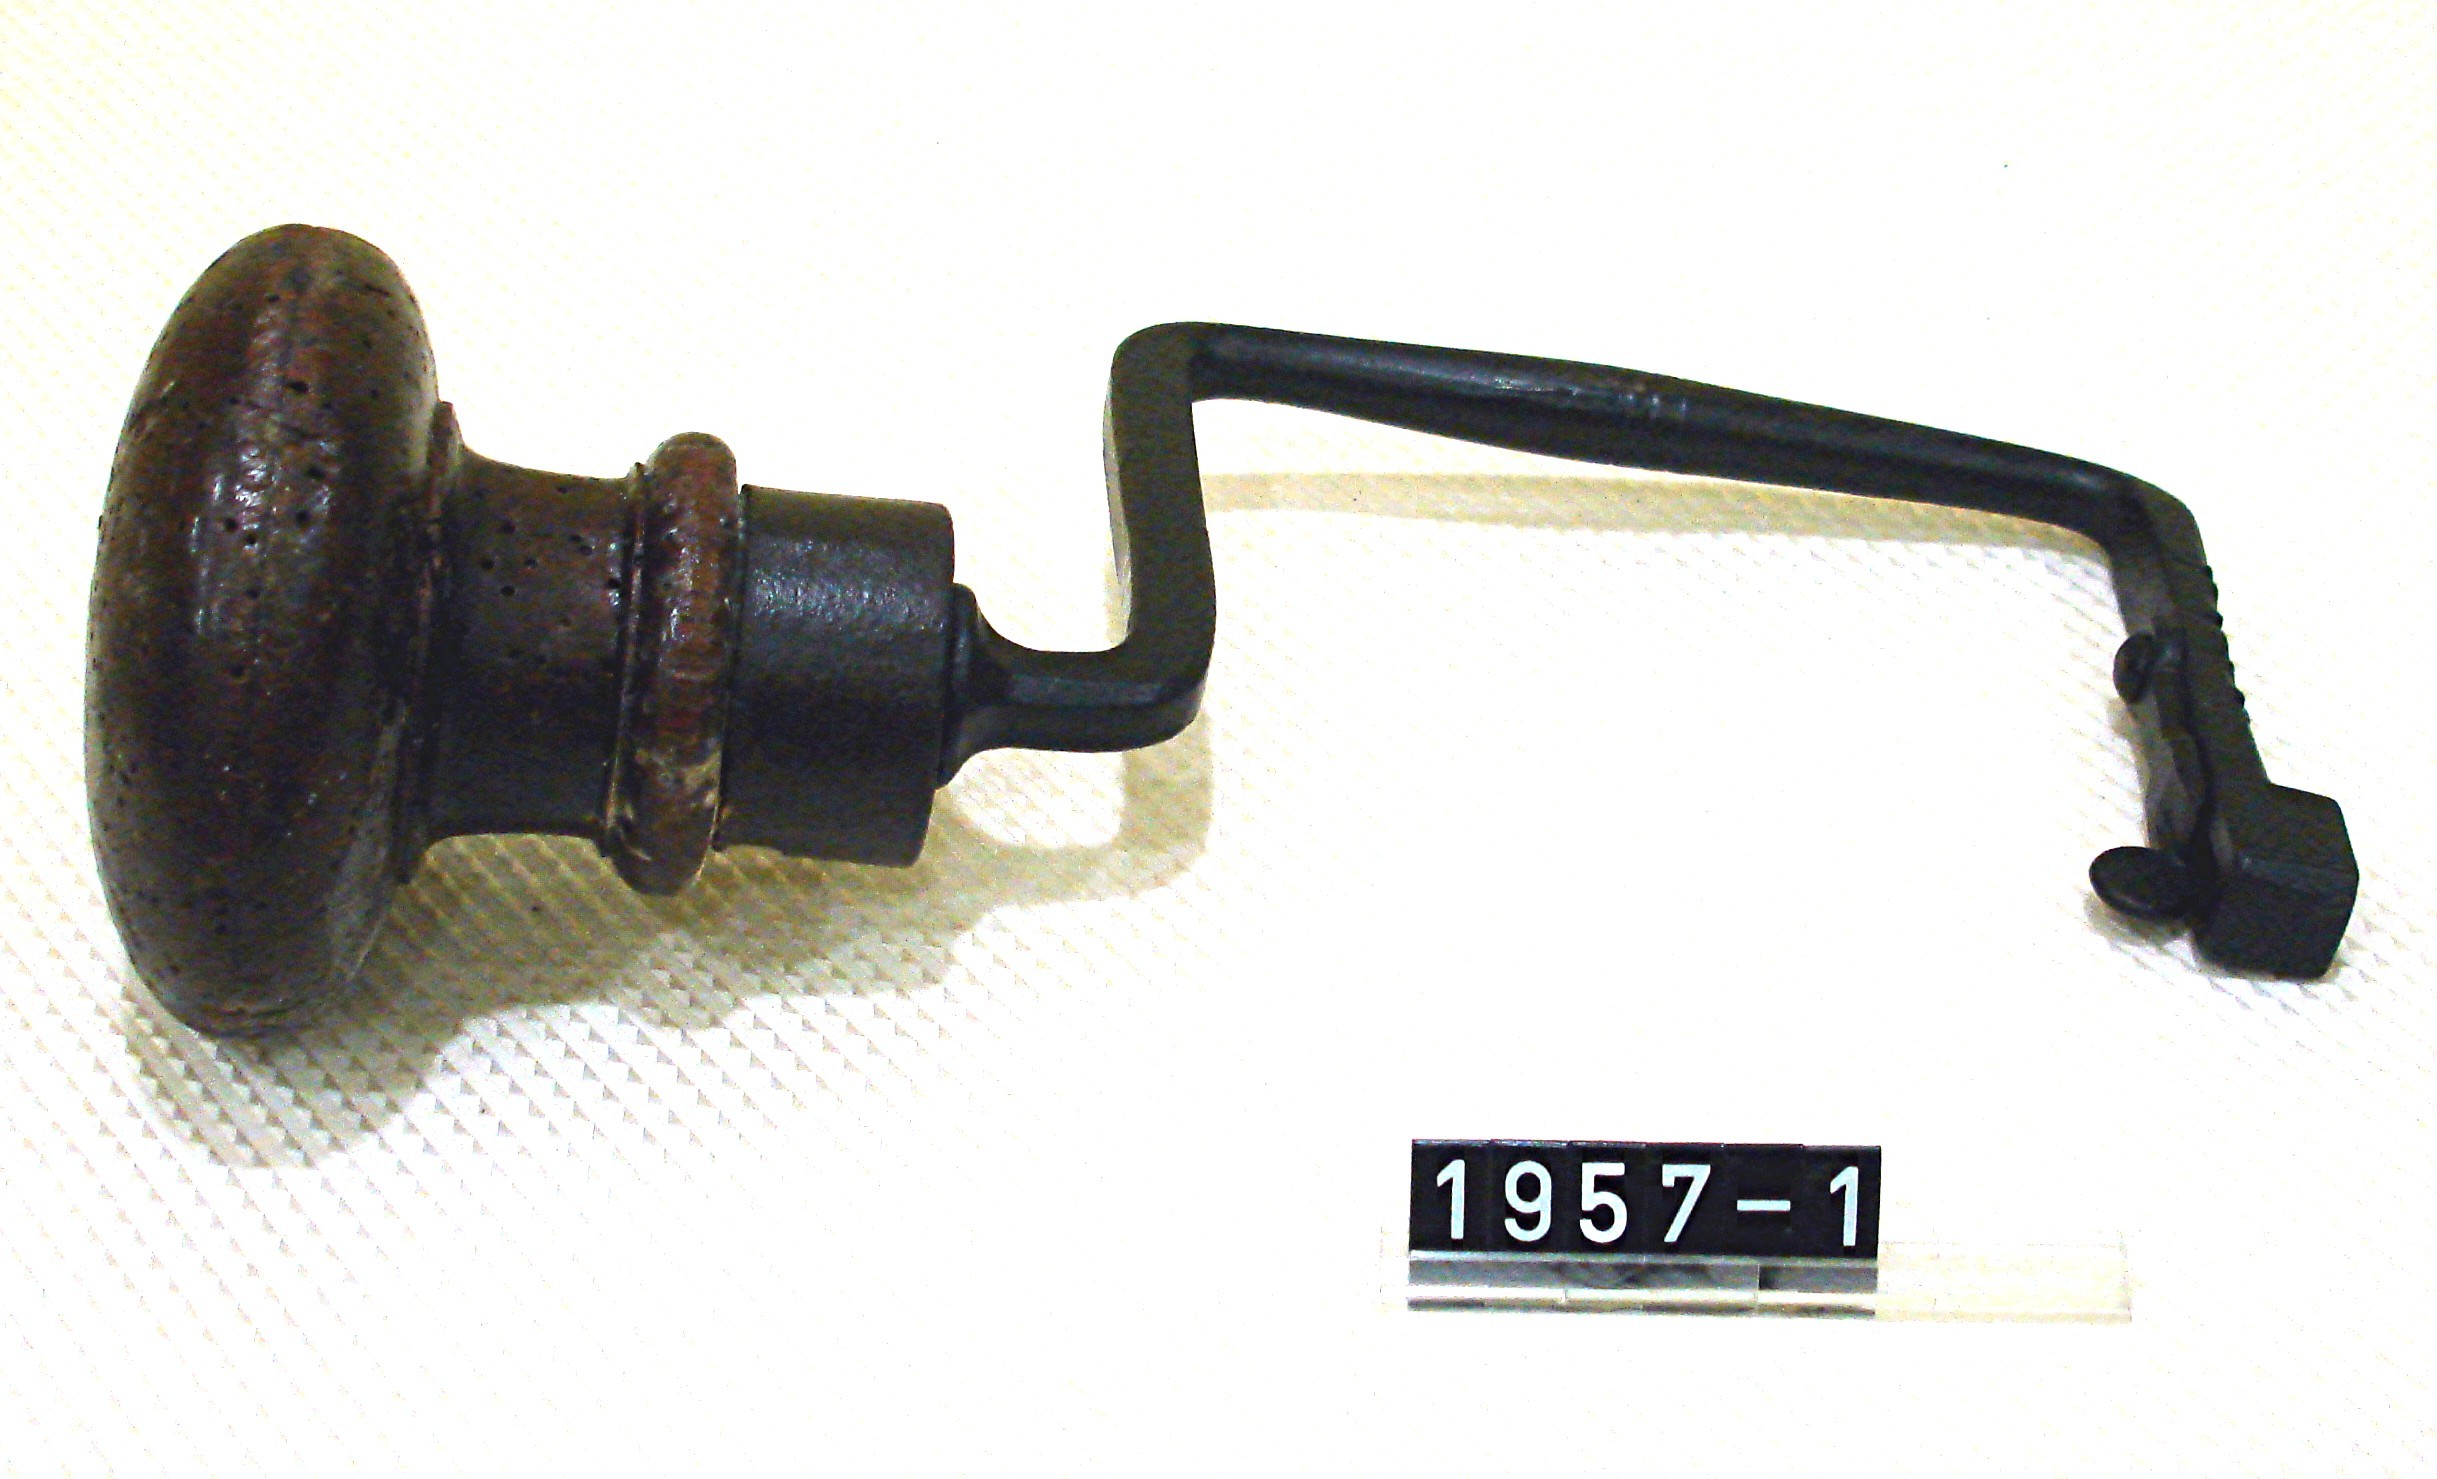 Küferhandwerkszeug aus Eisen/Holz; Handbohrer; Brustleier; um 1900 (Stadtmuseum Bad Dürkheim, Museumsgesellschaft Bad Dürkheim e.V. CC BY-NC-SA)